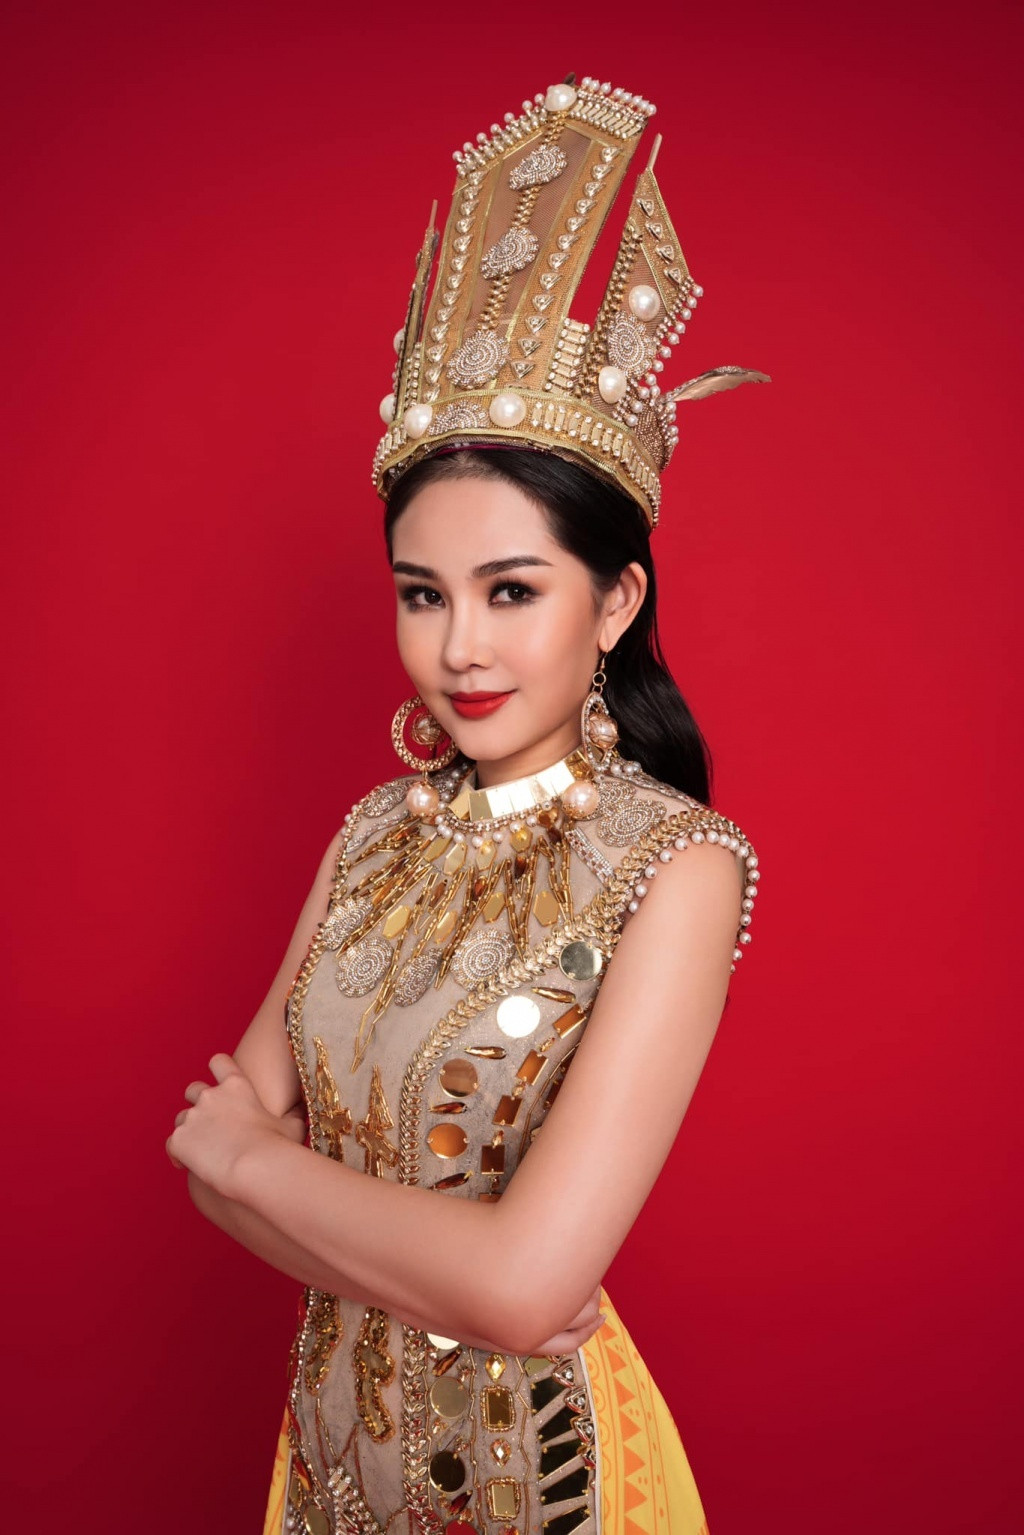 Thành tích tốt nhất của Việt Nam tại cuộc thi là Lê Âu Ngân Anh - á hậu 4 Hoa hậu Liên lục địa 2018.